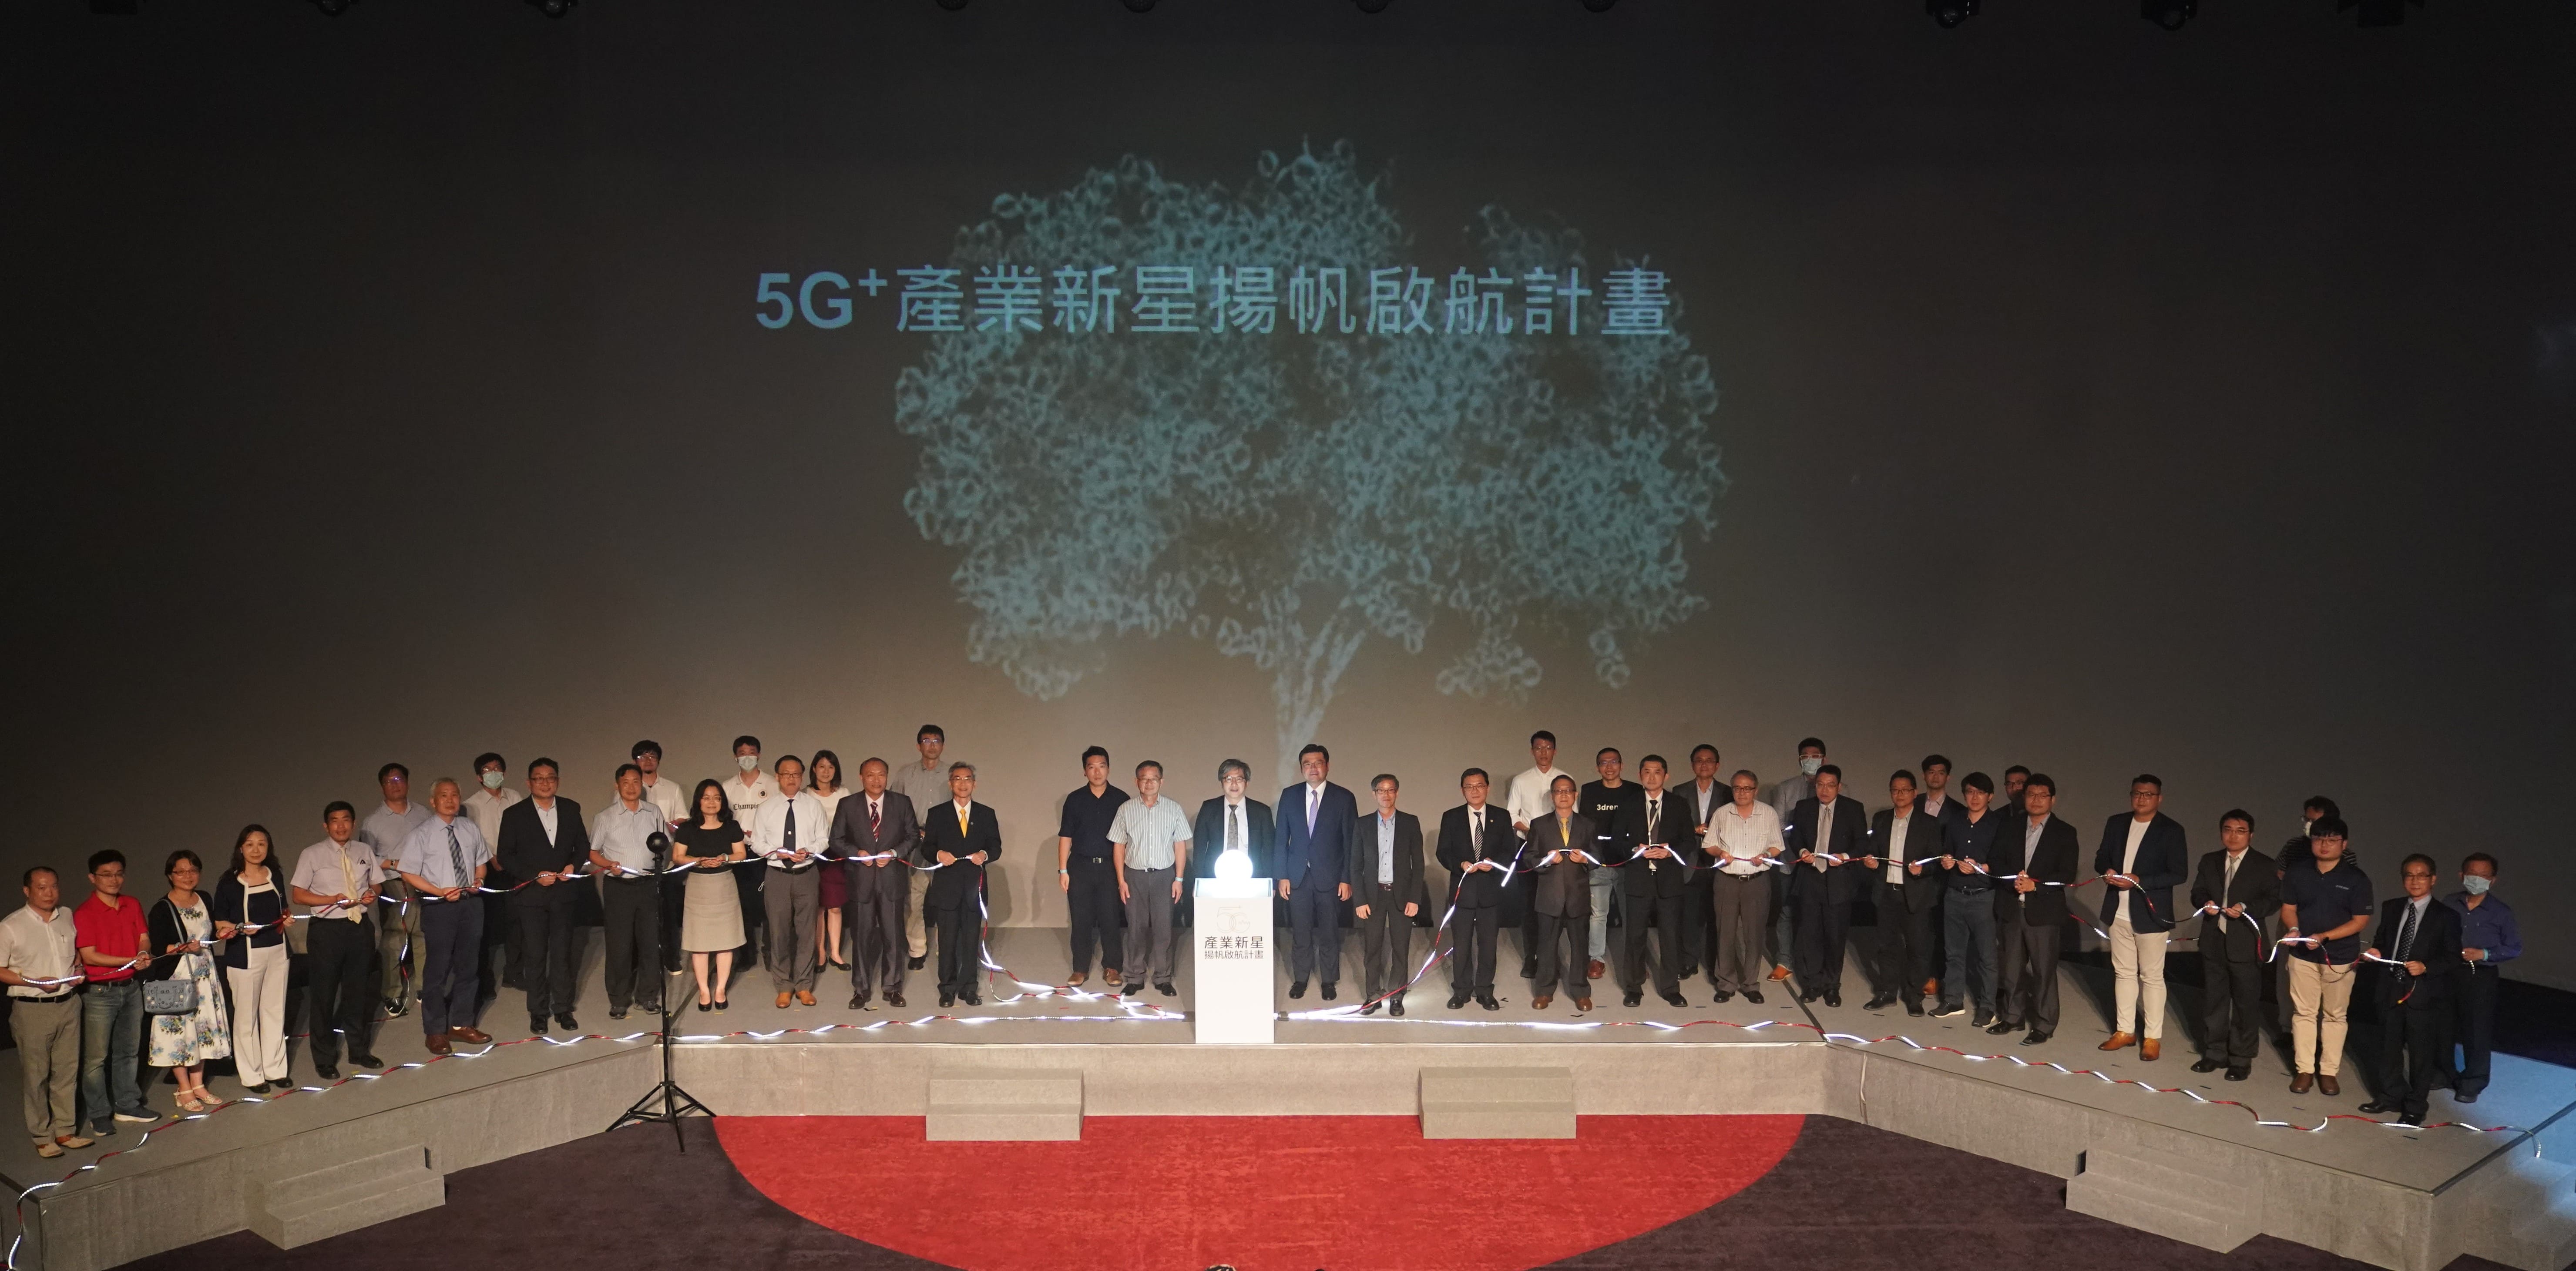 109年《5G+產業新星揚帆啟航計畫》開訓典禮暨交流論壇